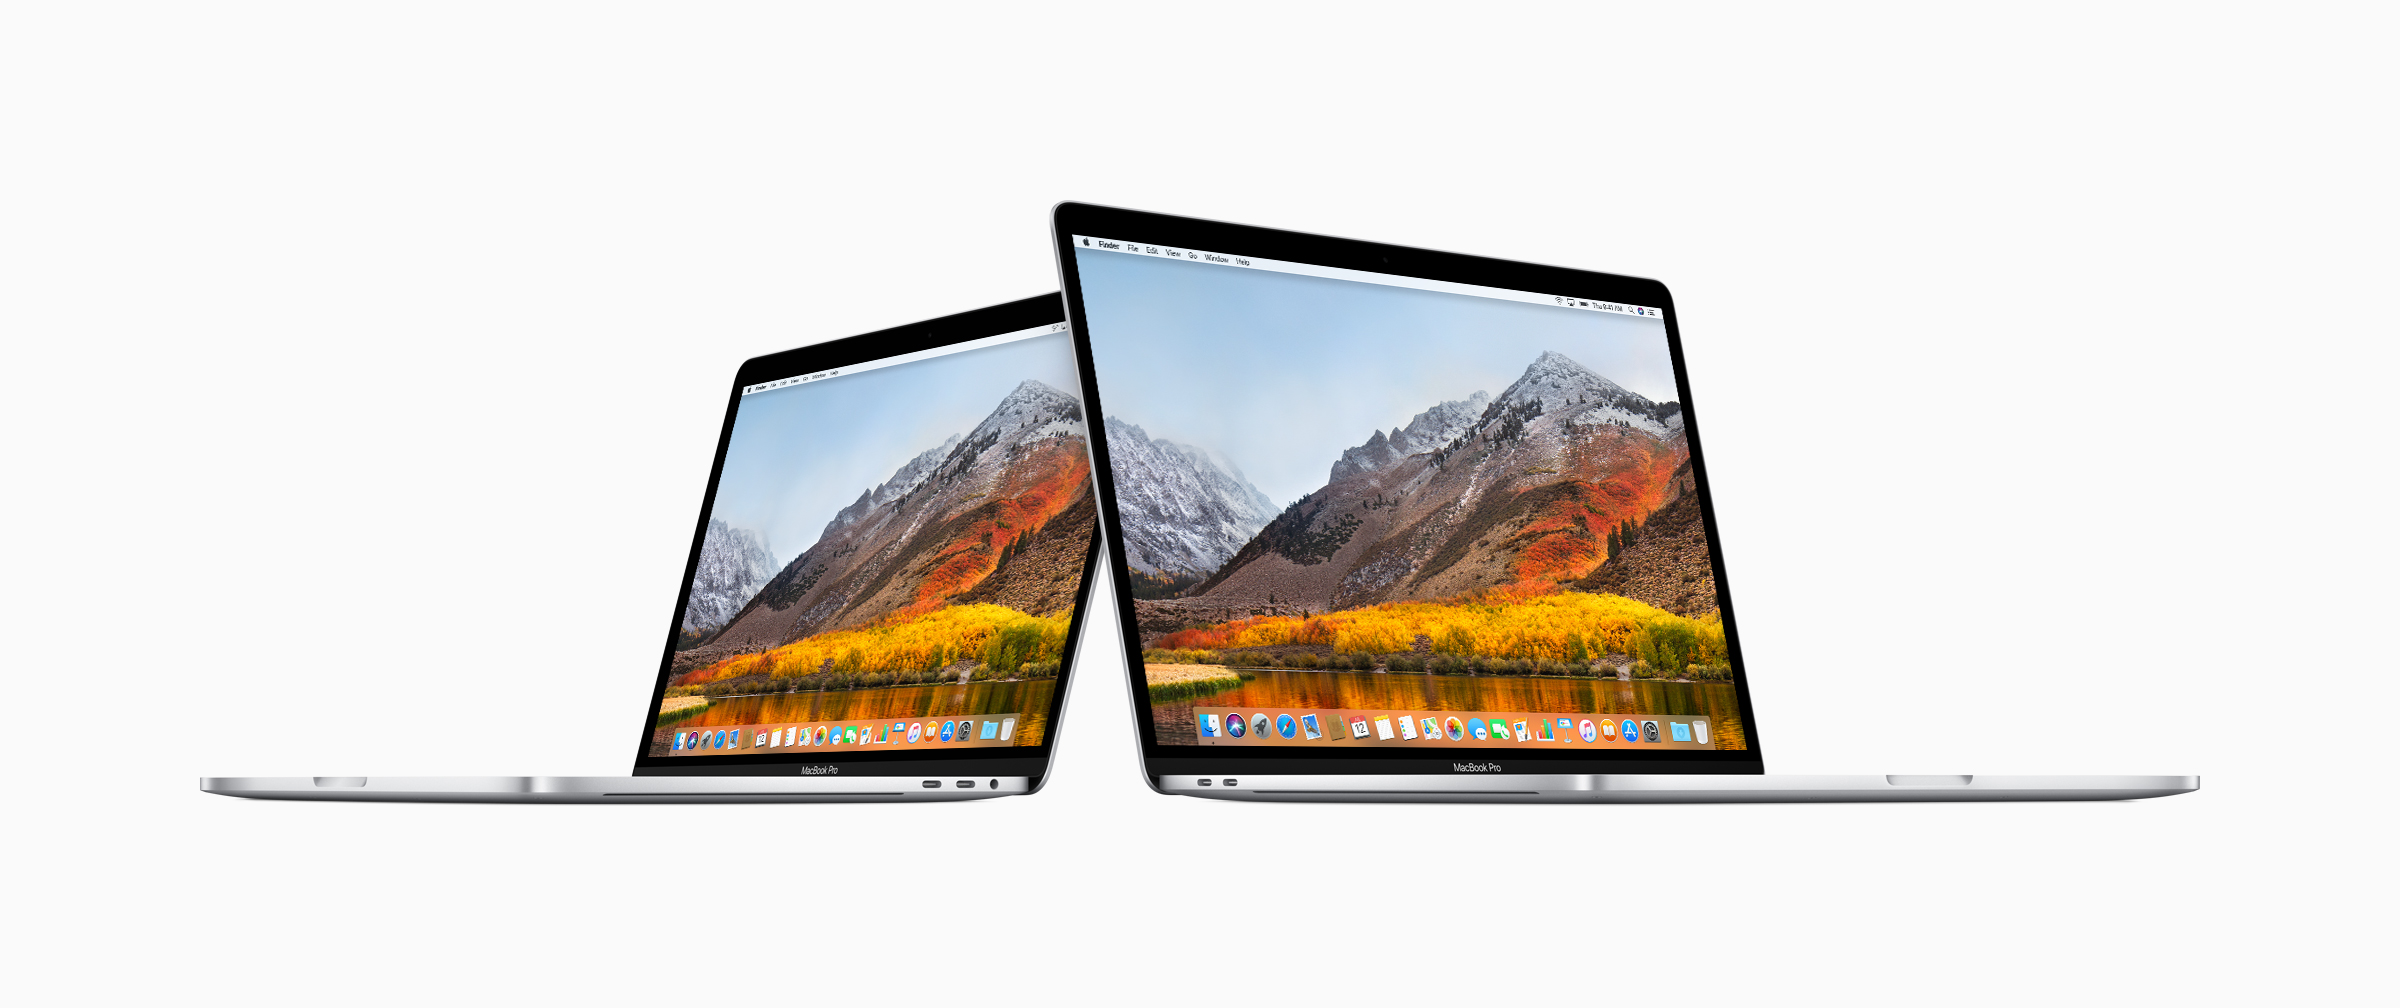 Immagine pubblicata in relazione al seguente contenuto: Apple lancia i MacBook Pro con CPU Core di ottava generazione e Radeon Pro | Nome immagine: news28451_Apple-MacBook-Pro-Intel-Core-ottava-generazione_1.jpg